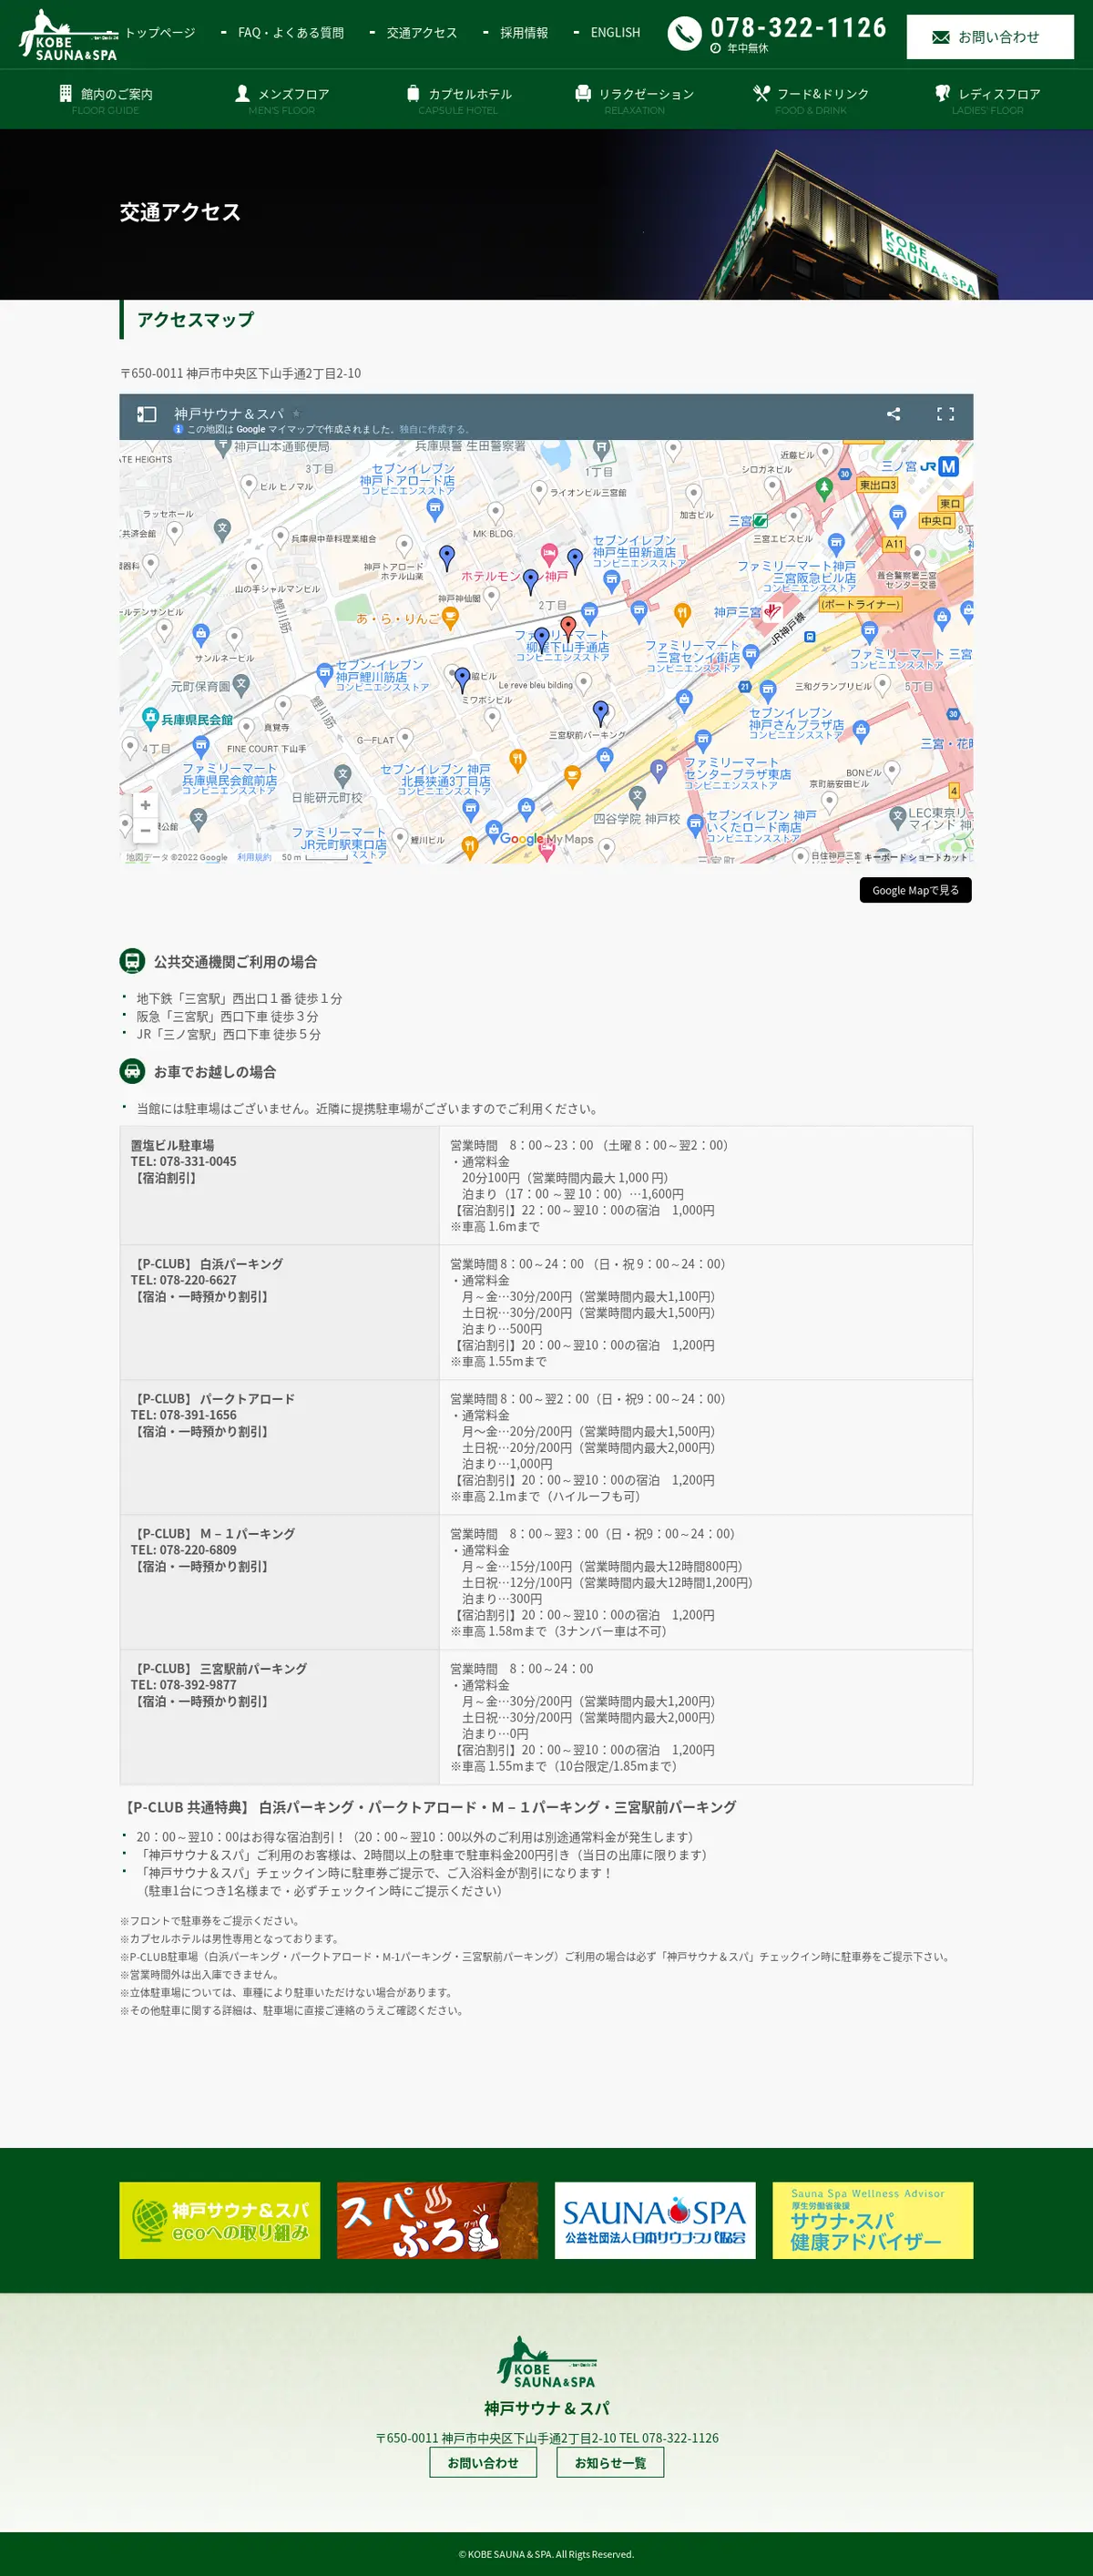 キャプチャ画面 会社名:神戸サウナ & スパプロジェクト名:KOBESAUNA＆SPA 画面名:アクセス・地図・マップ詳細 デバイス名:PCカテゴリ:なしタグ:PC,アクセス・地図・マップ詳細